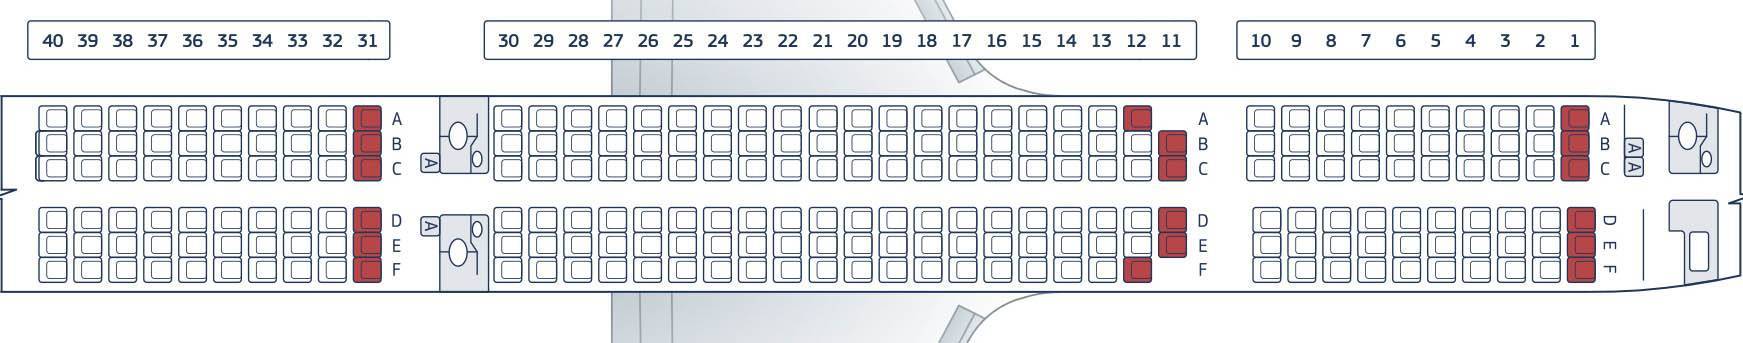 Расположение мест в самолете боинг 757-200